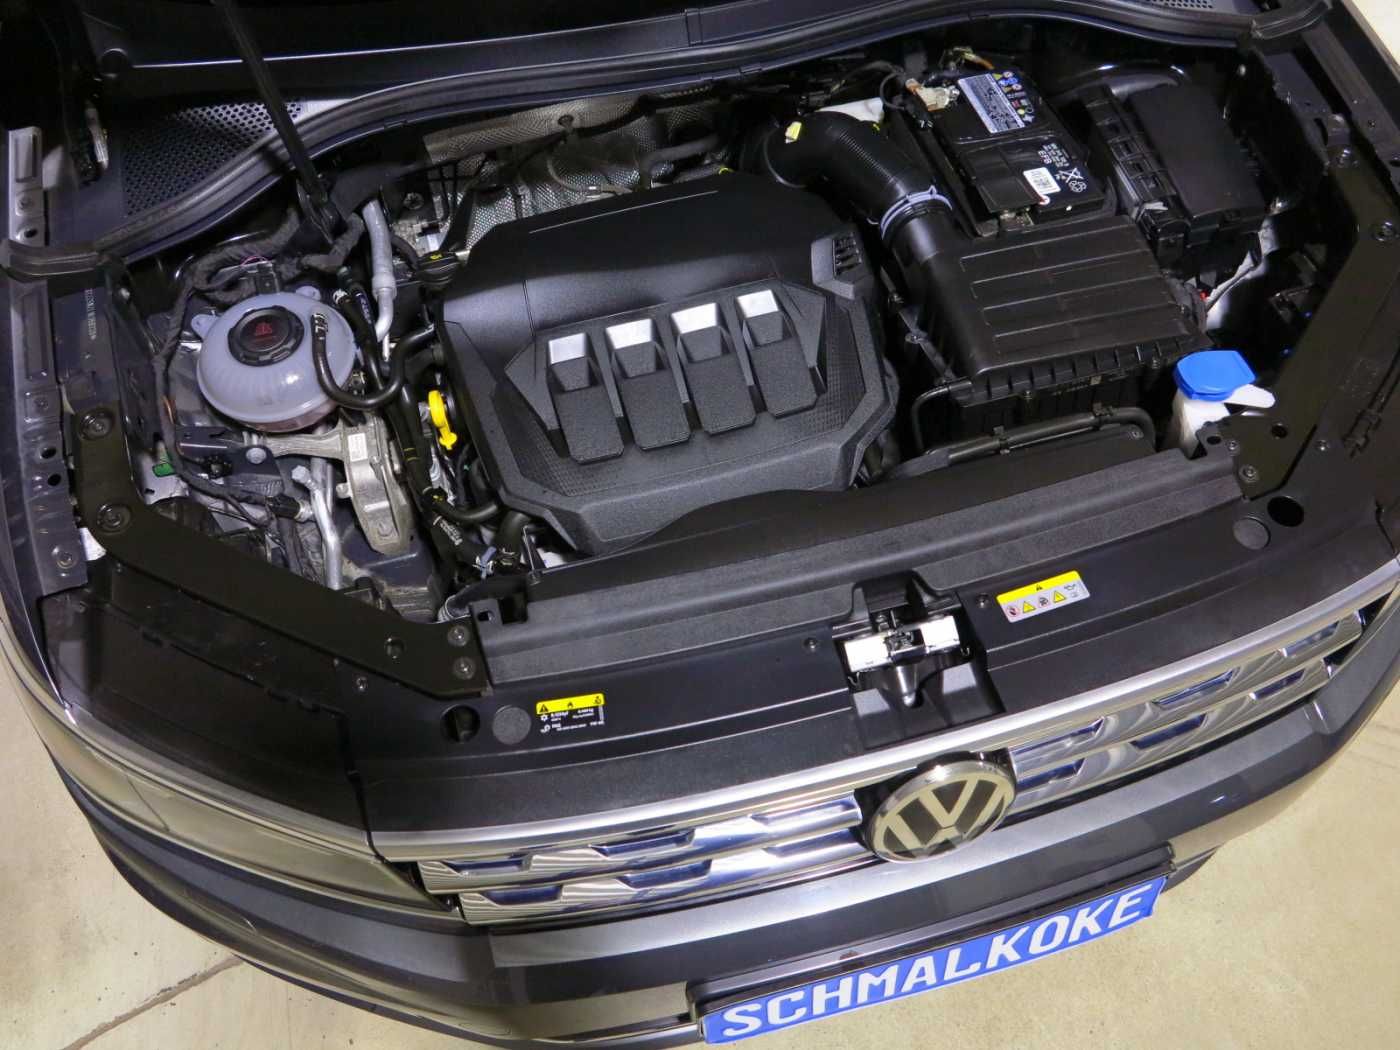 VW Tiguan Kennzeichenbeleuchtung wechseln